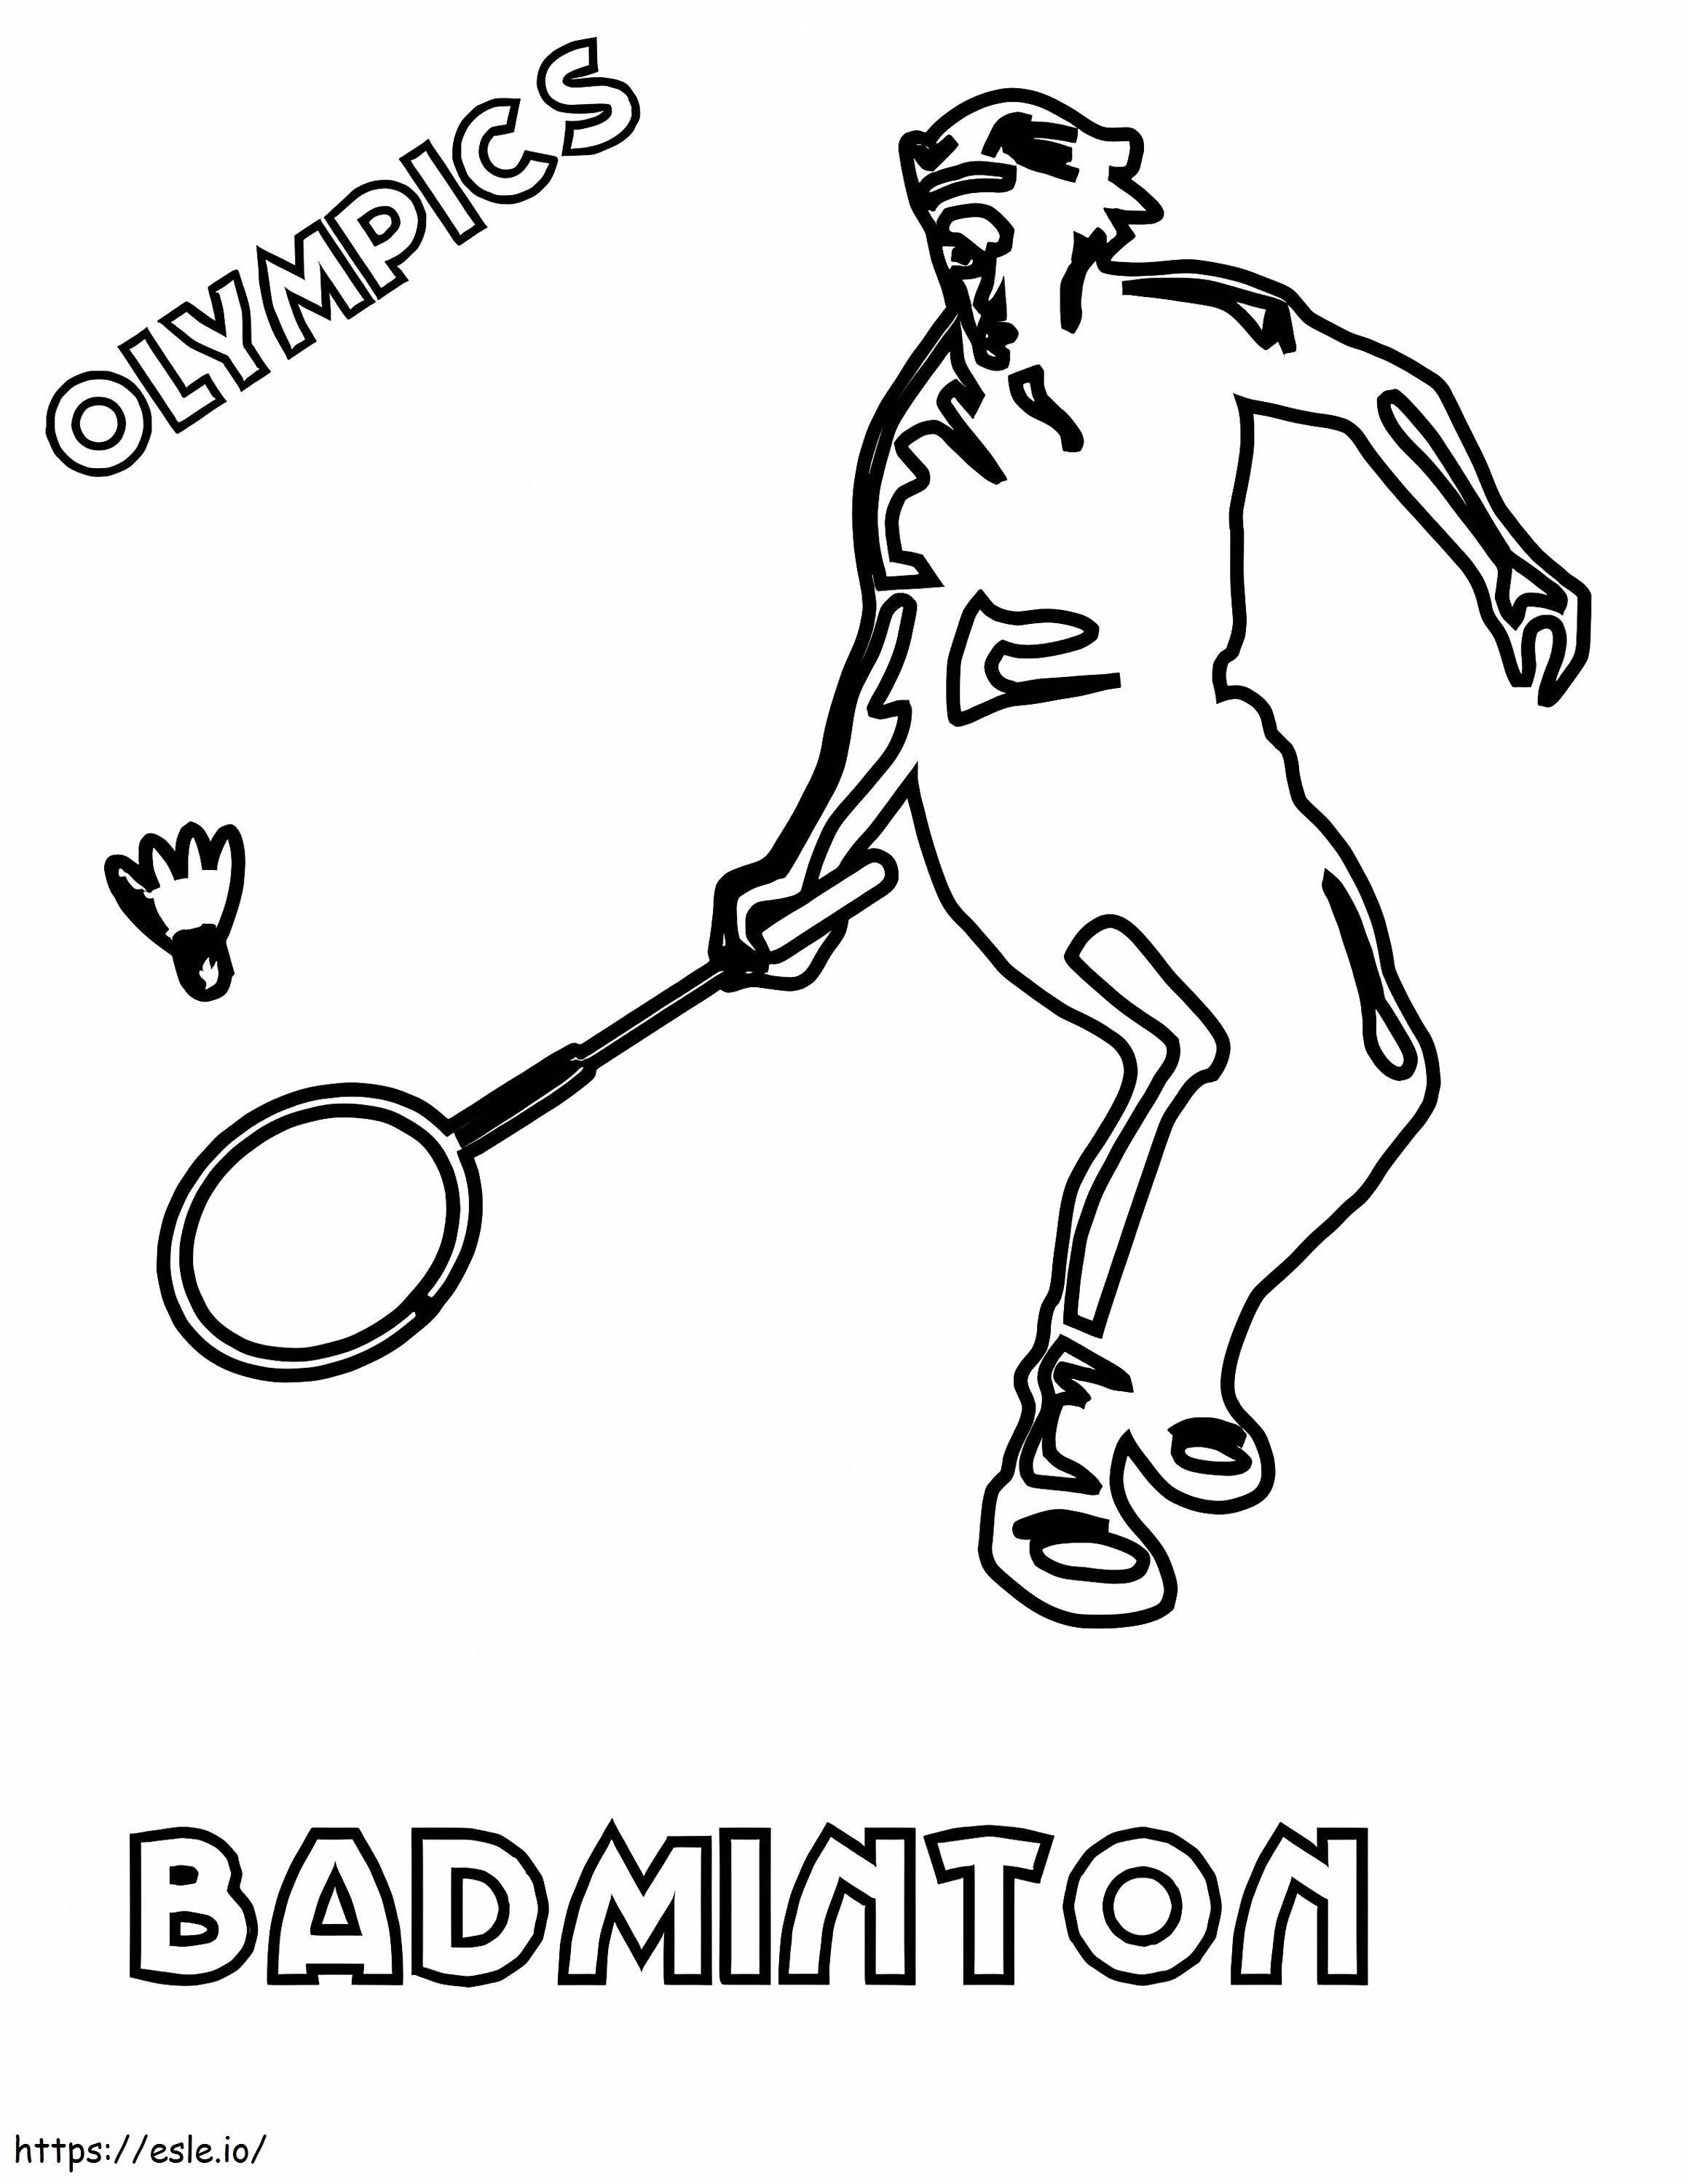 Olimpiadi di badminton da colorare